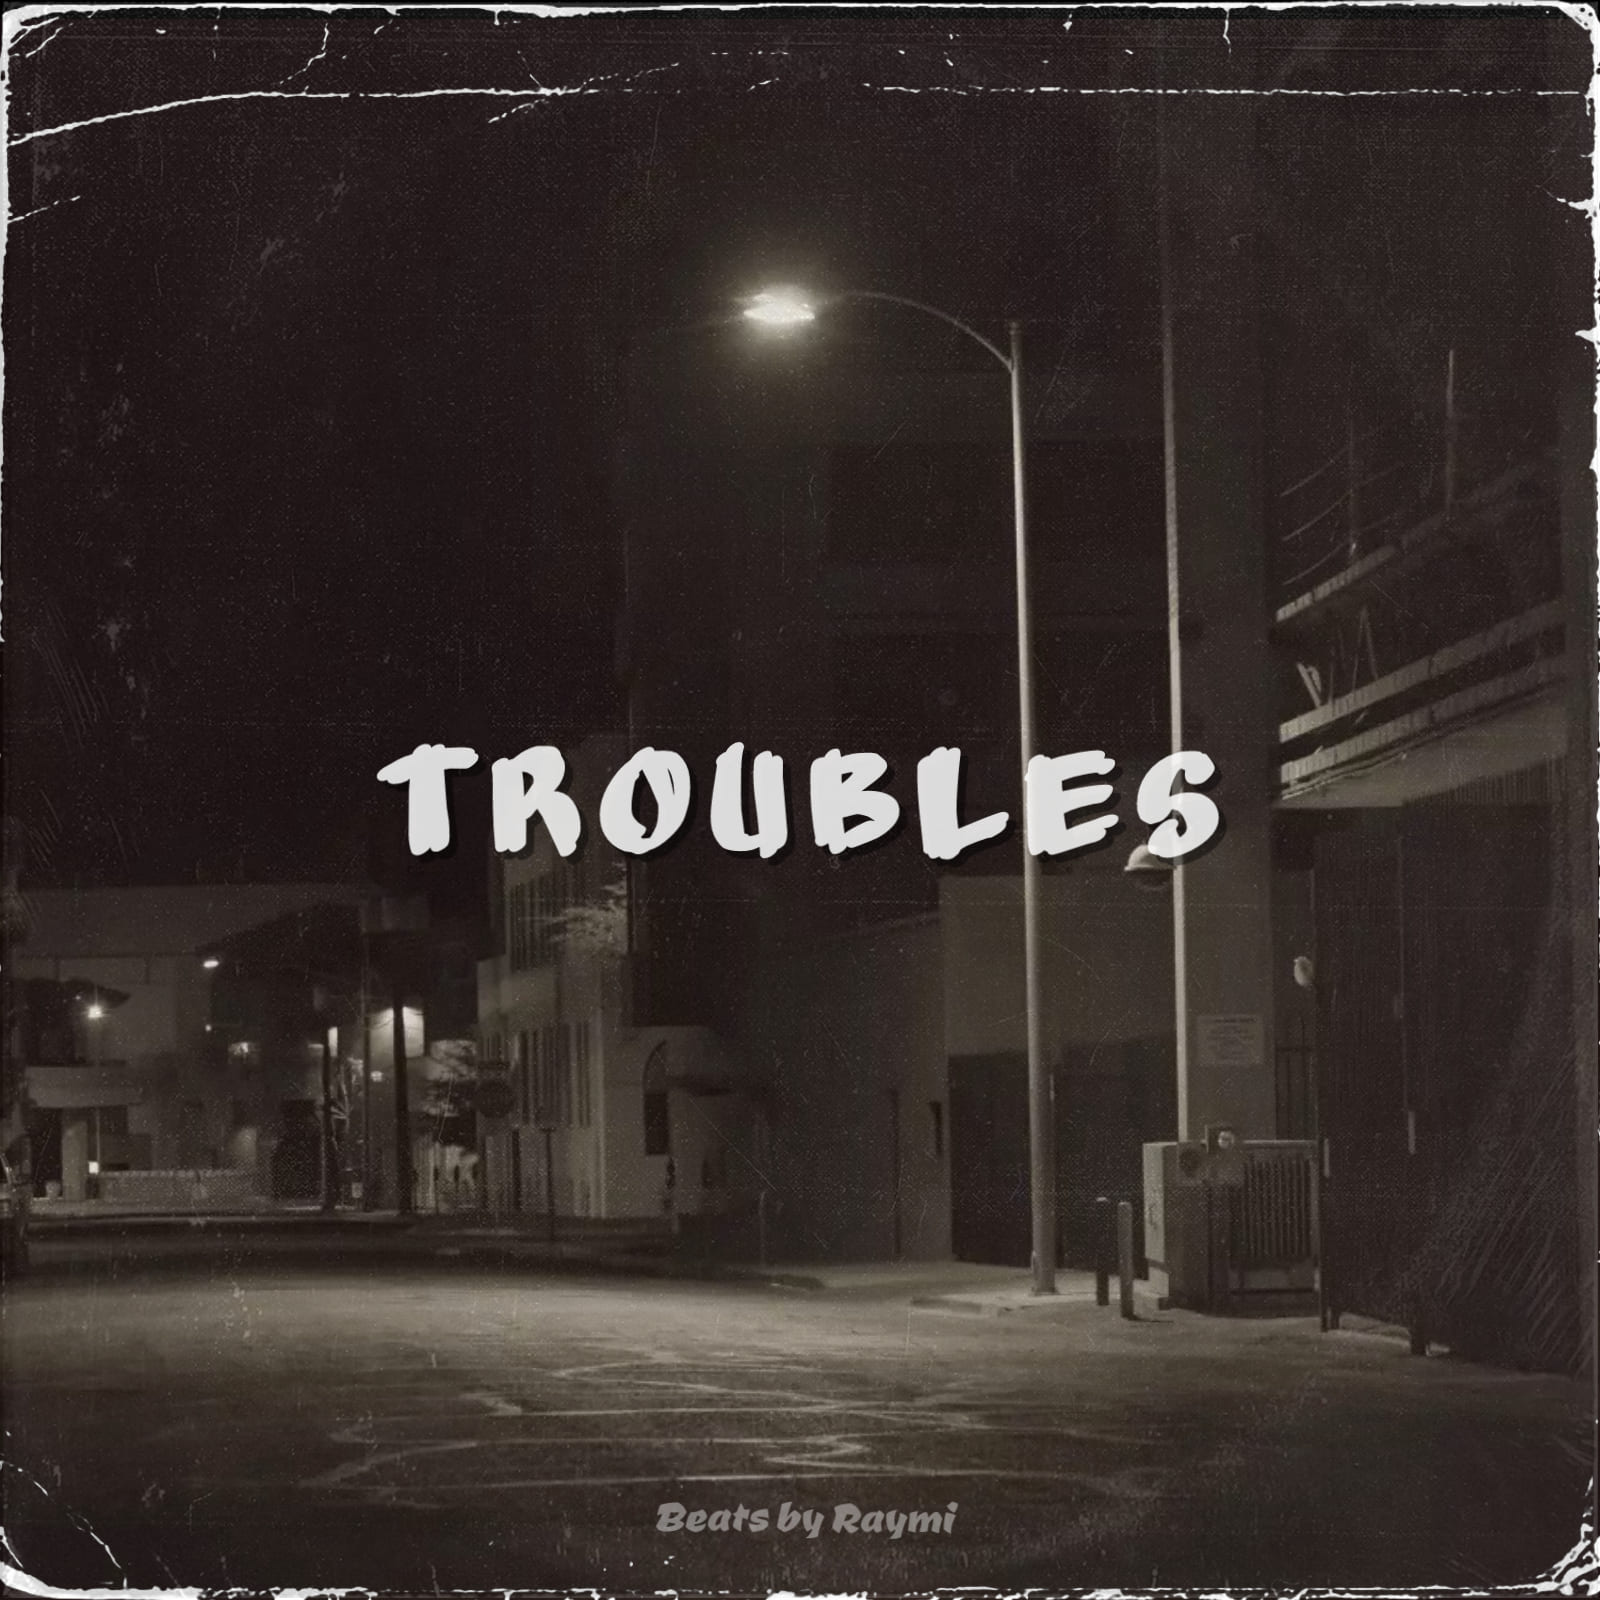 обложка бита, Raymi, музыка, cover, Troubles (энергичный, качевый hip-hop бит)